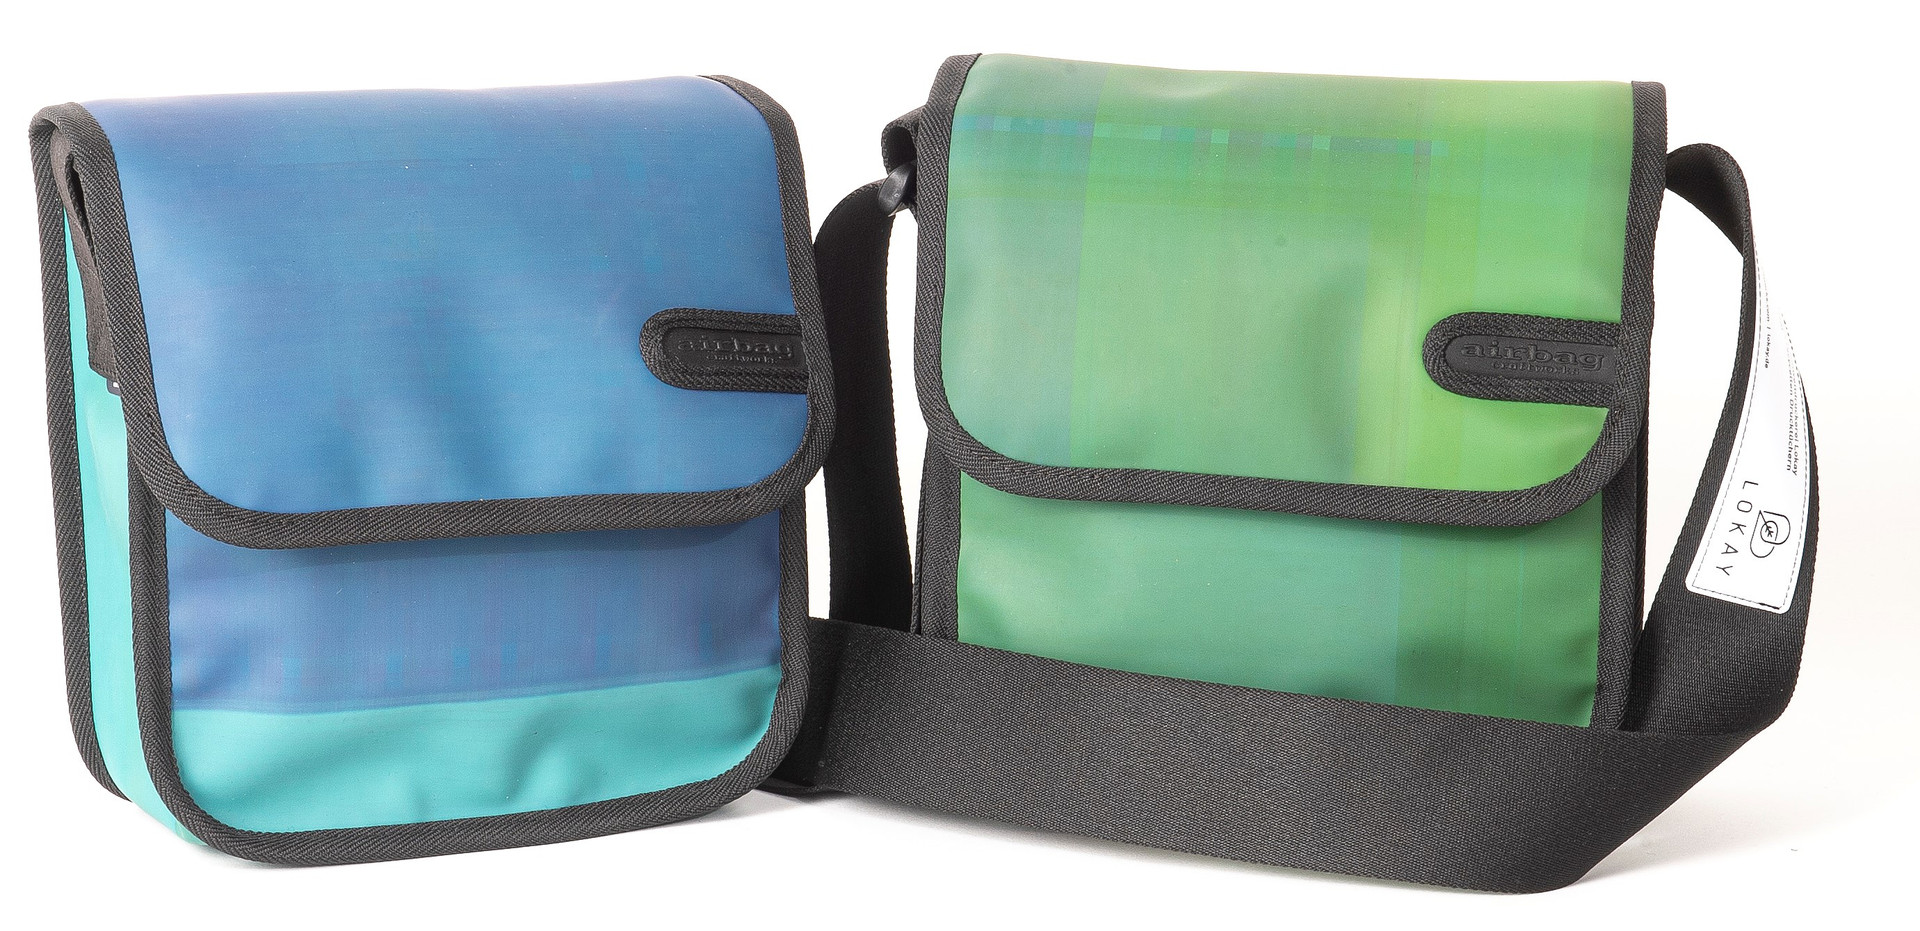 Zwei Taschen: links in hellblau, rechts in hellgrün mit einem schwarzen Schultergurt